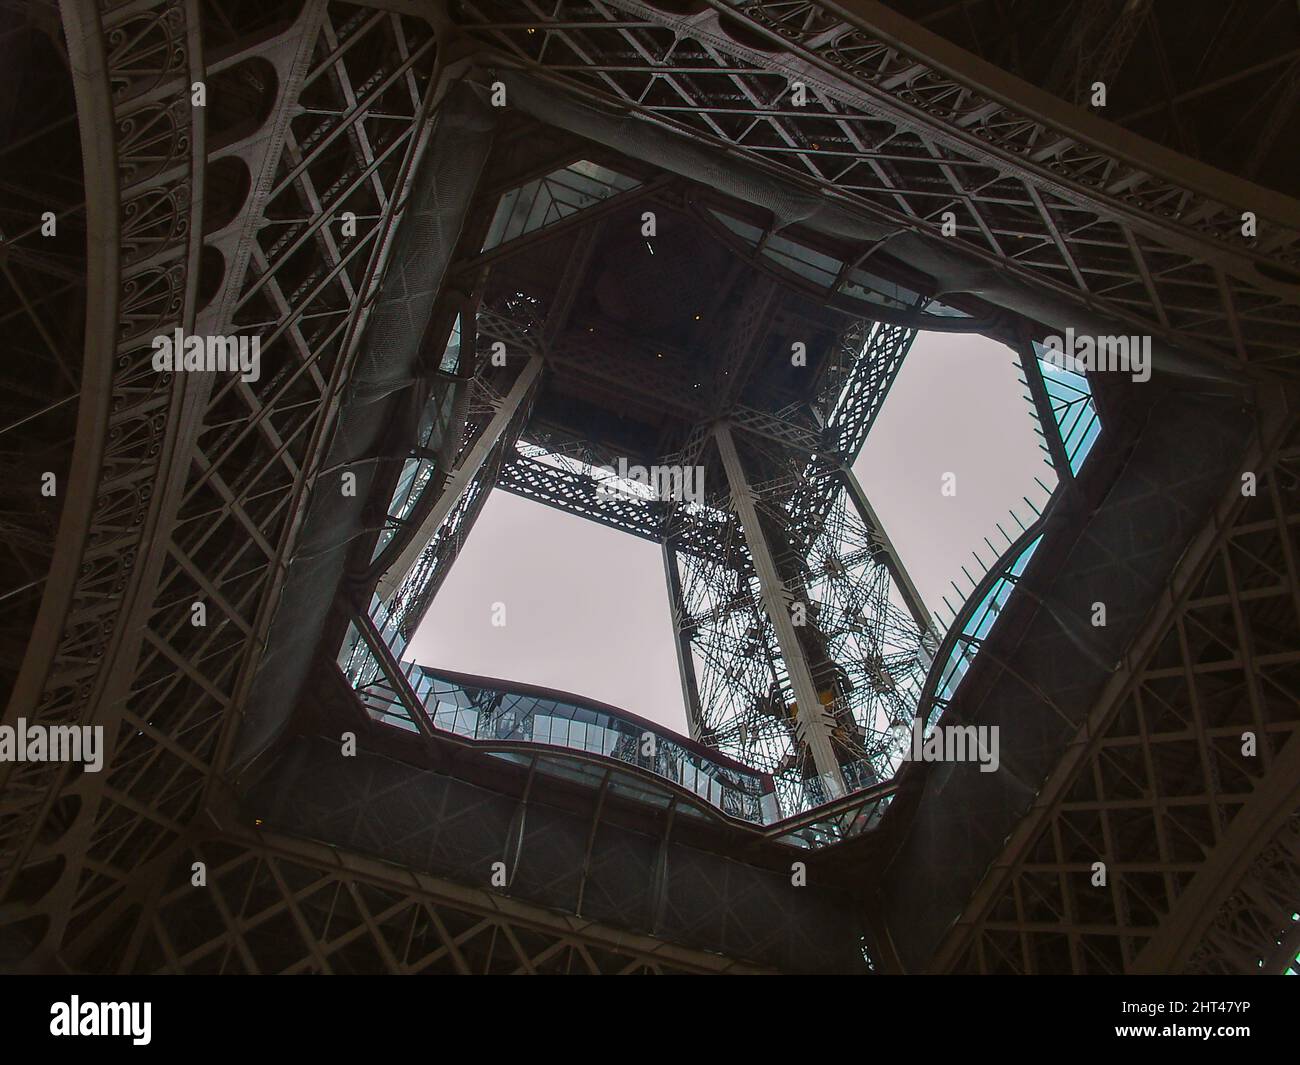 La tour Eiffel, en regardant vers le haut la perspective de la tour Eiffel, enenenenenenenenenenenering, des matériaux d'acier sur les constructions. Conception et ingénierie d'art. Paris France structures. Banque D'Images